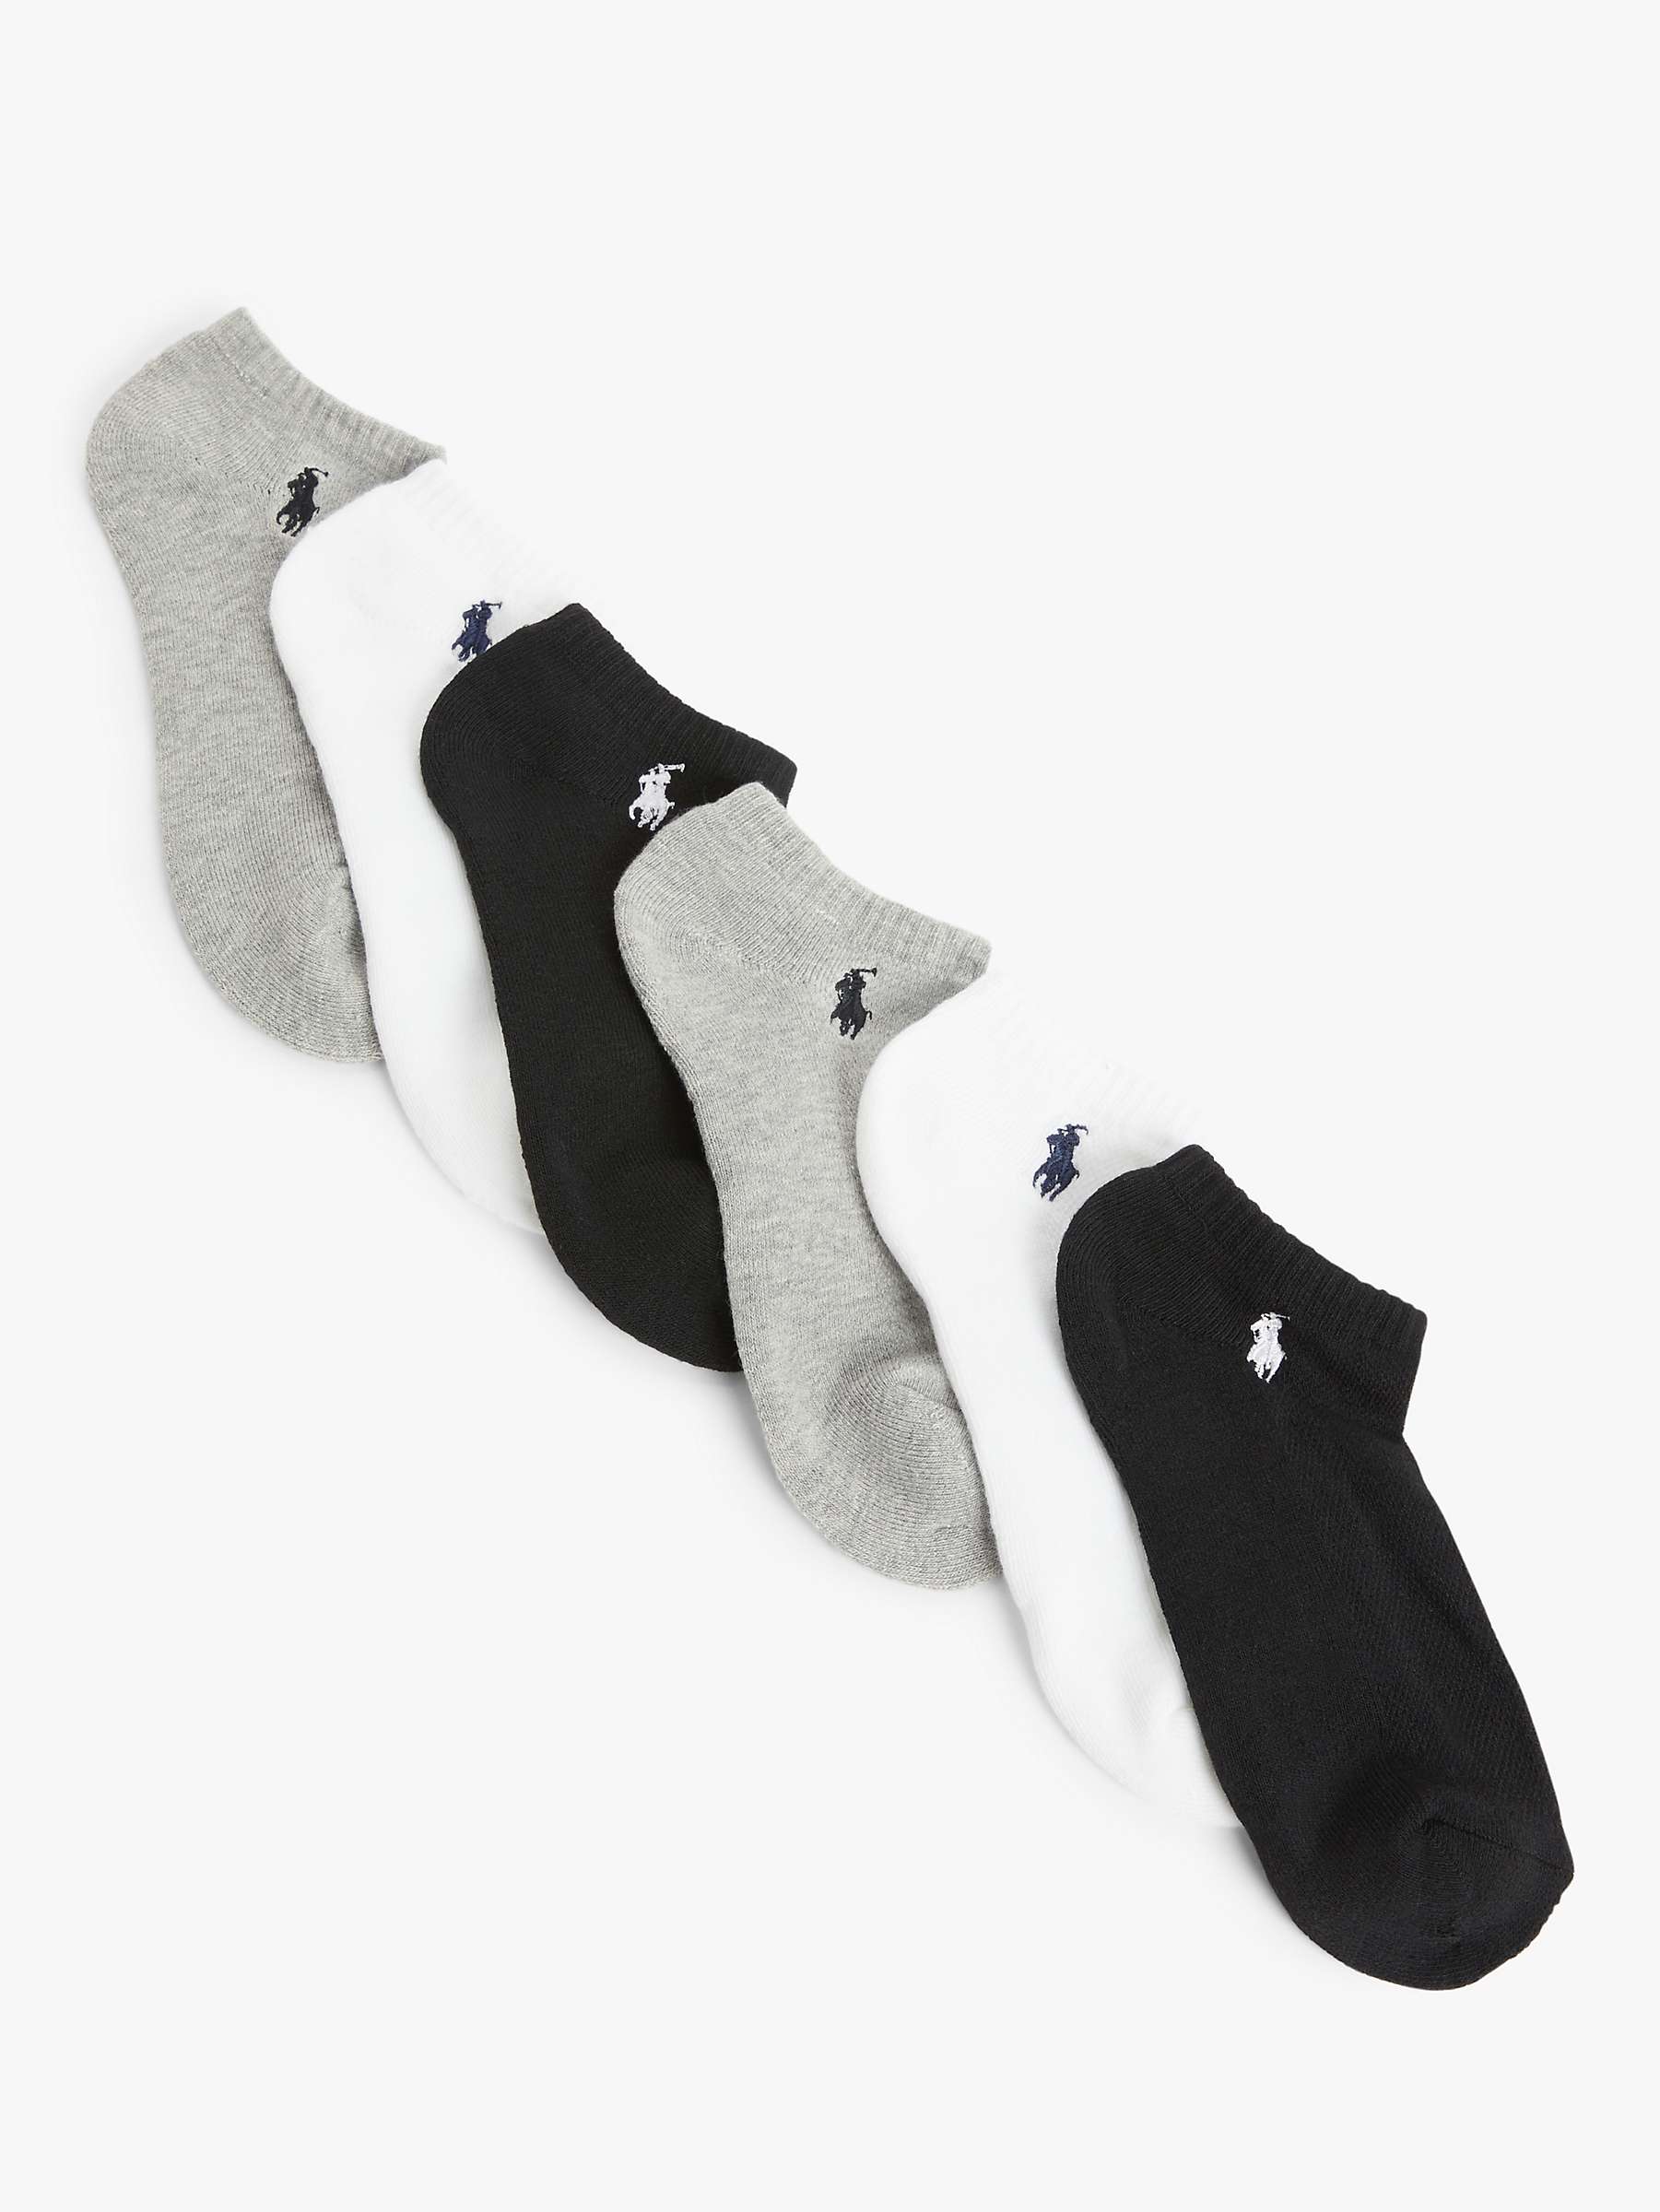 Buy Polo Ralph Lauren Trainer Socks, Pack of 6, Multi Online at johnlewis.com